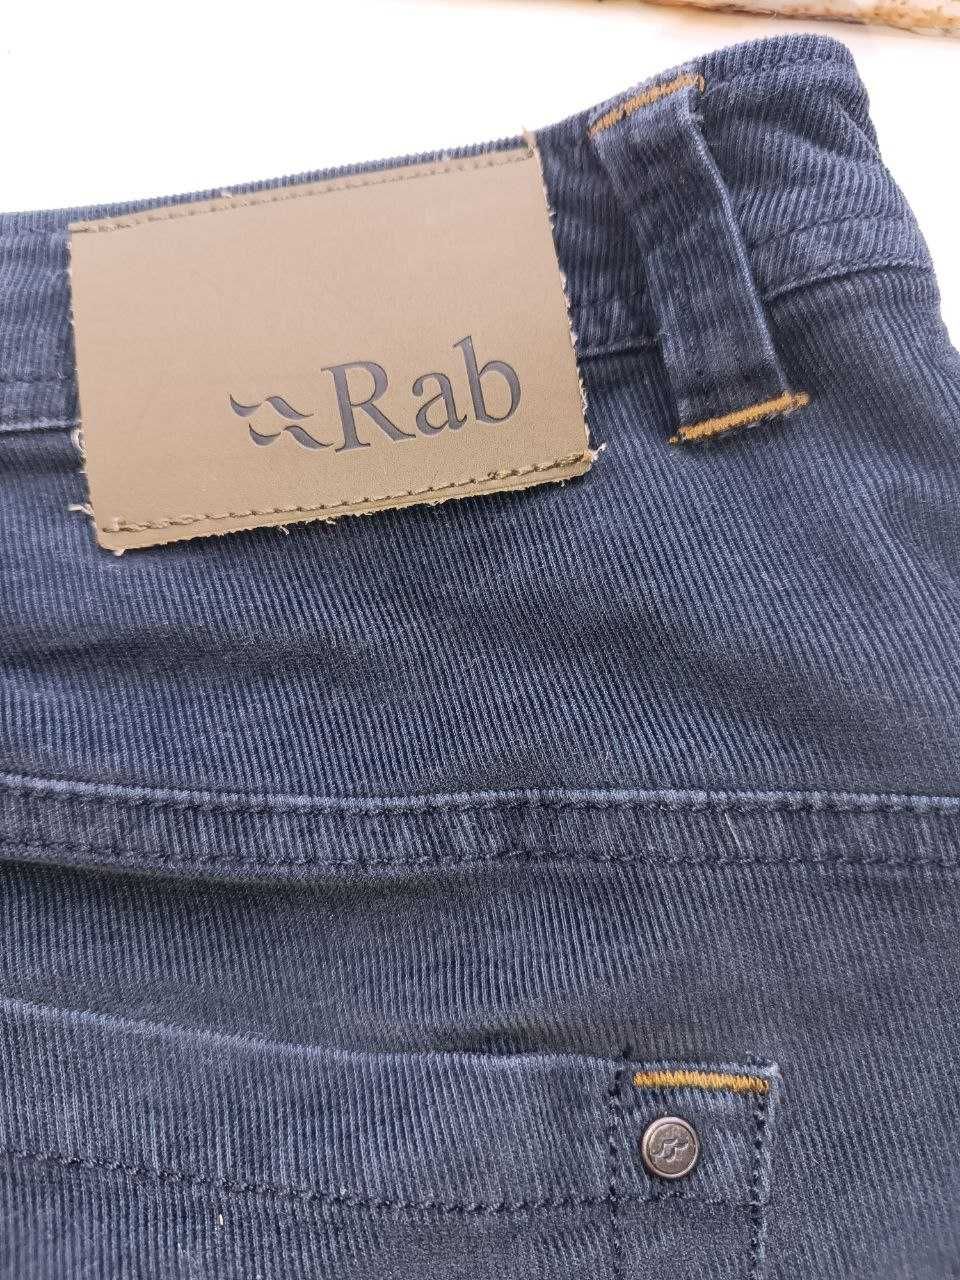 RAB чоловічі штани W36''/91 см (М)